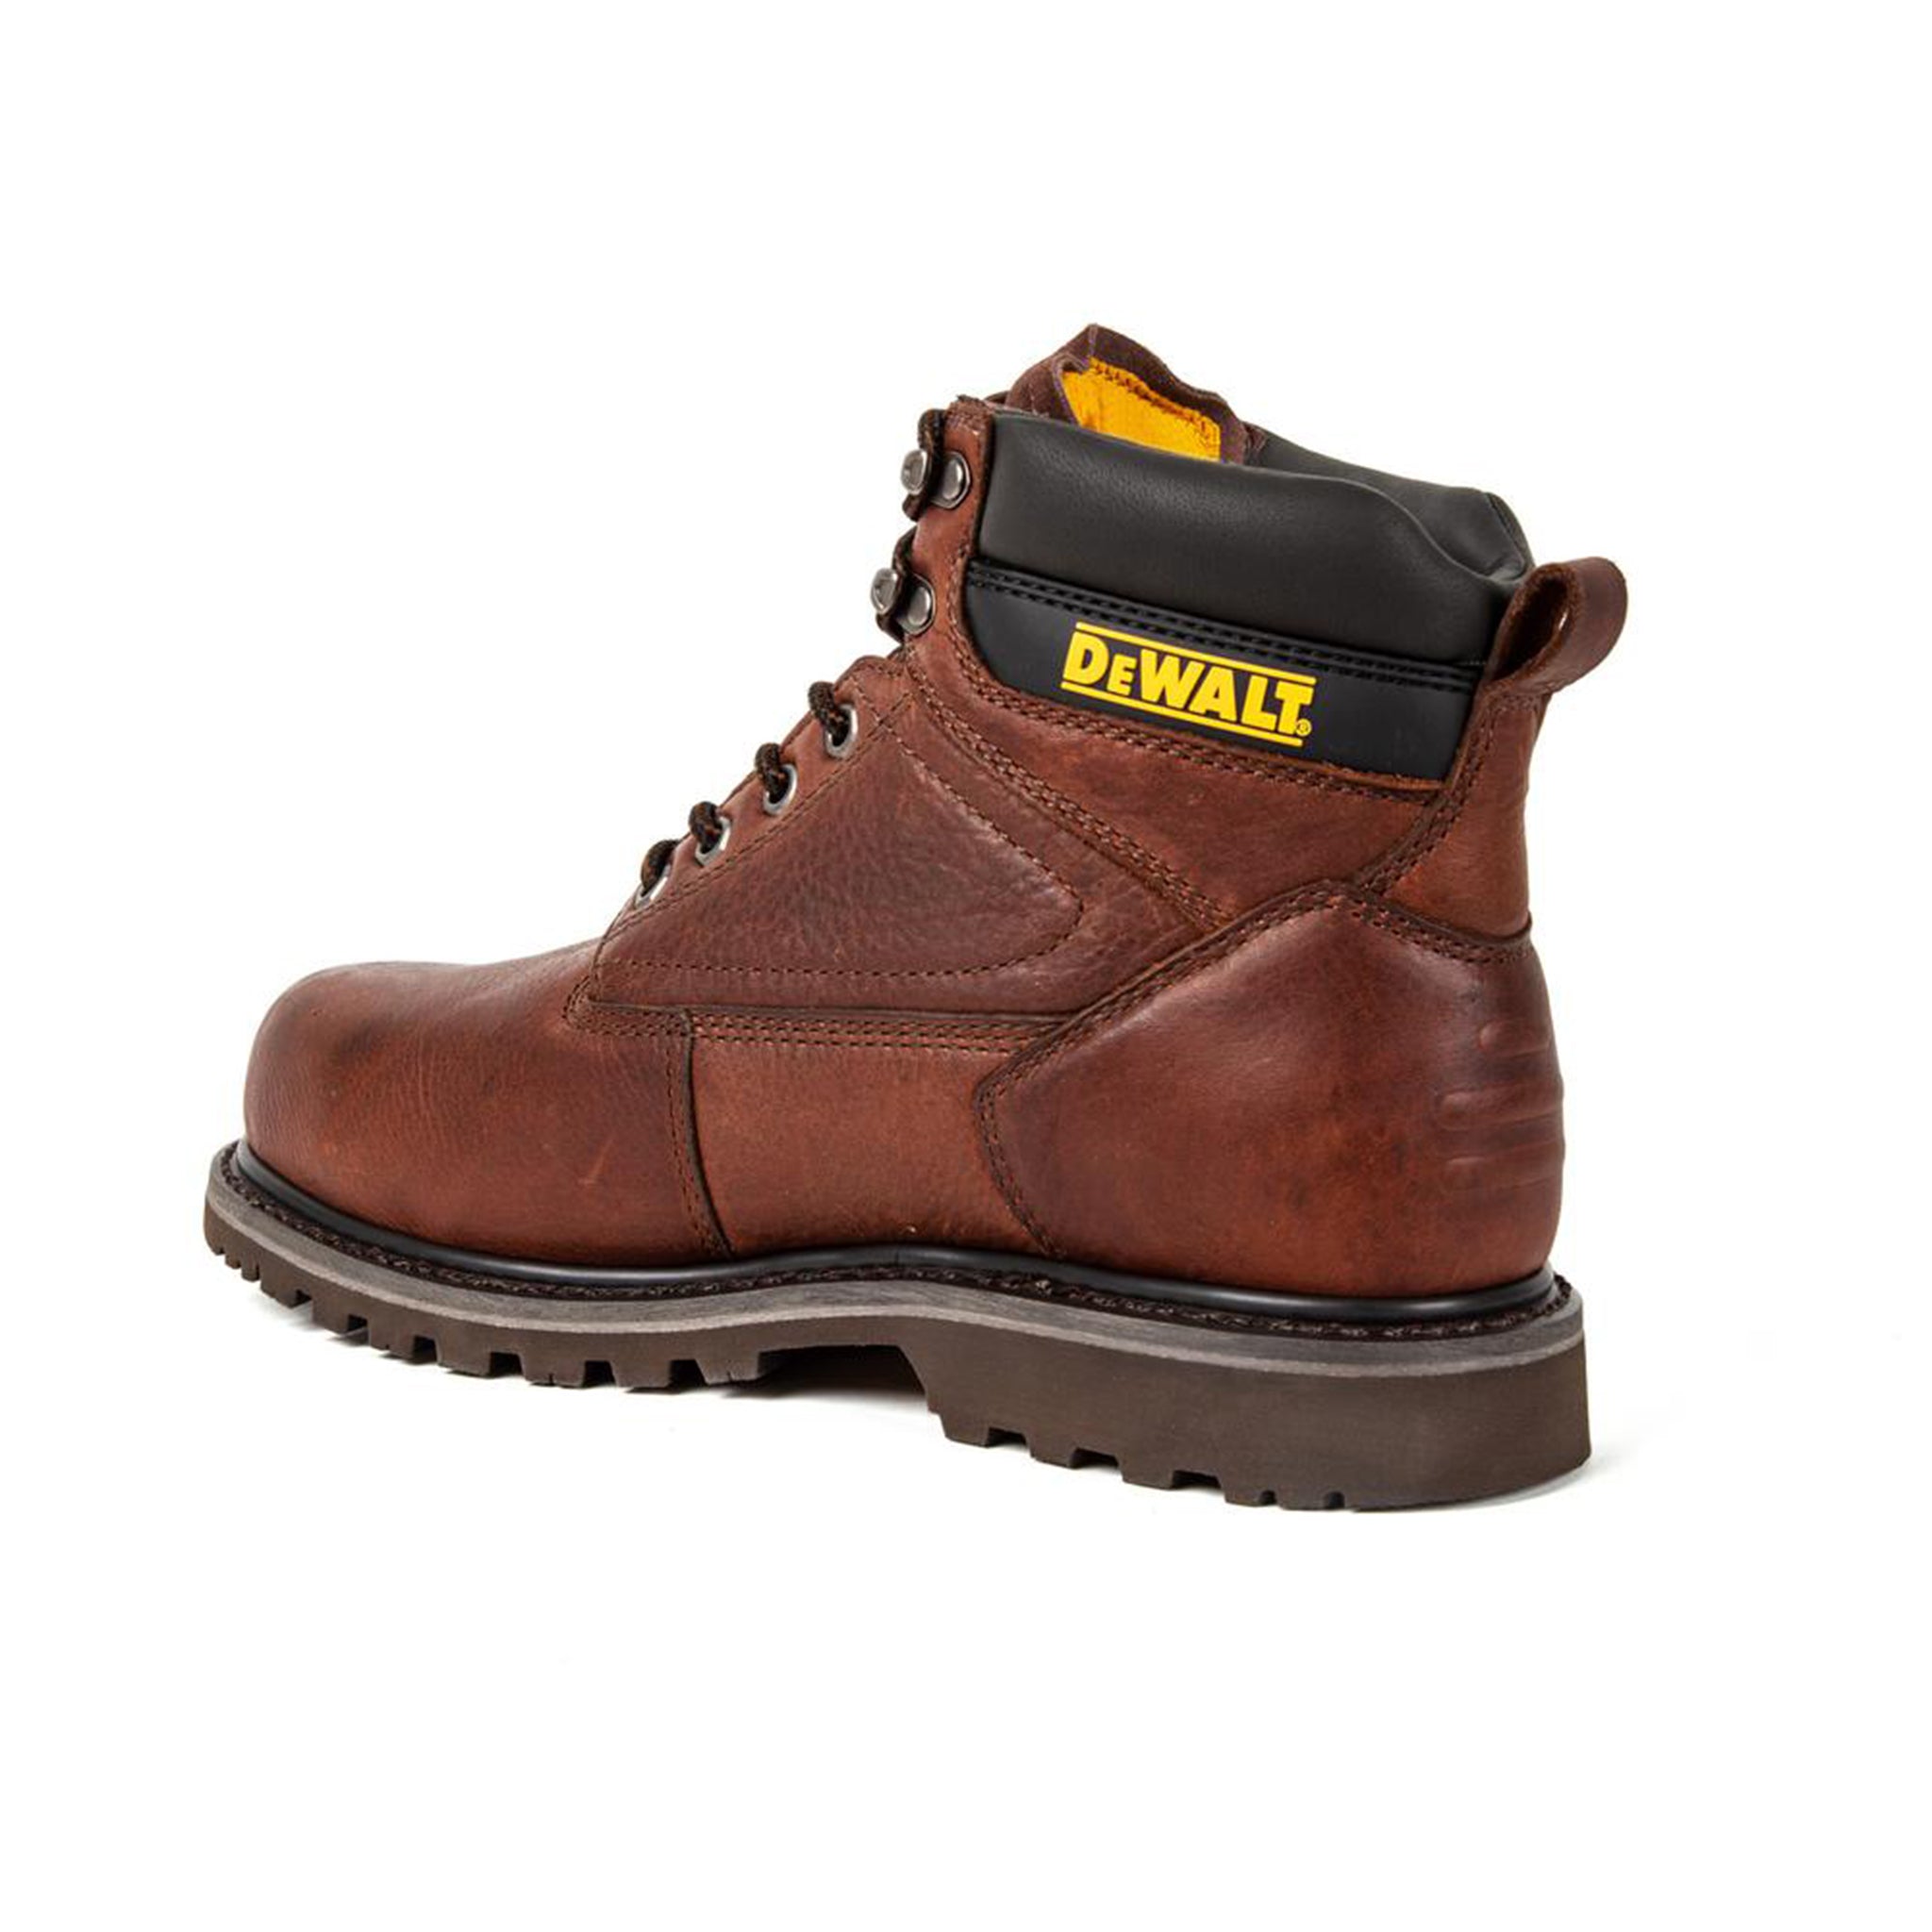 dewalt work boots sale